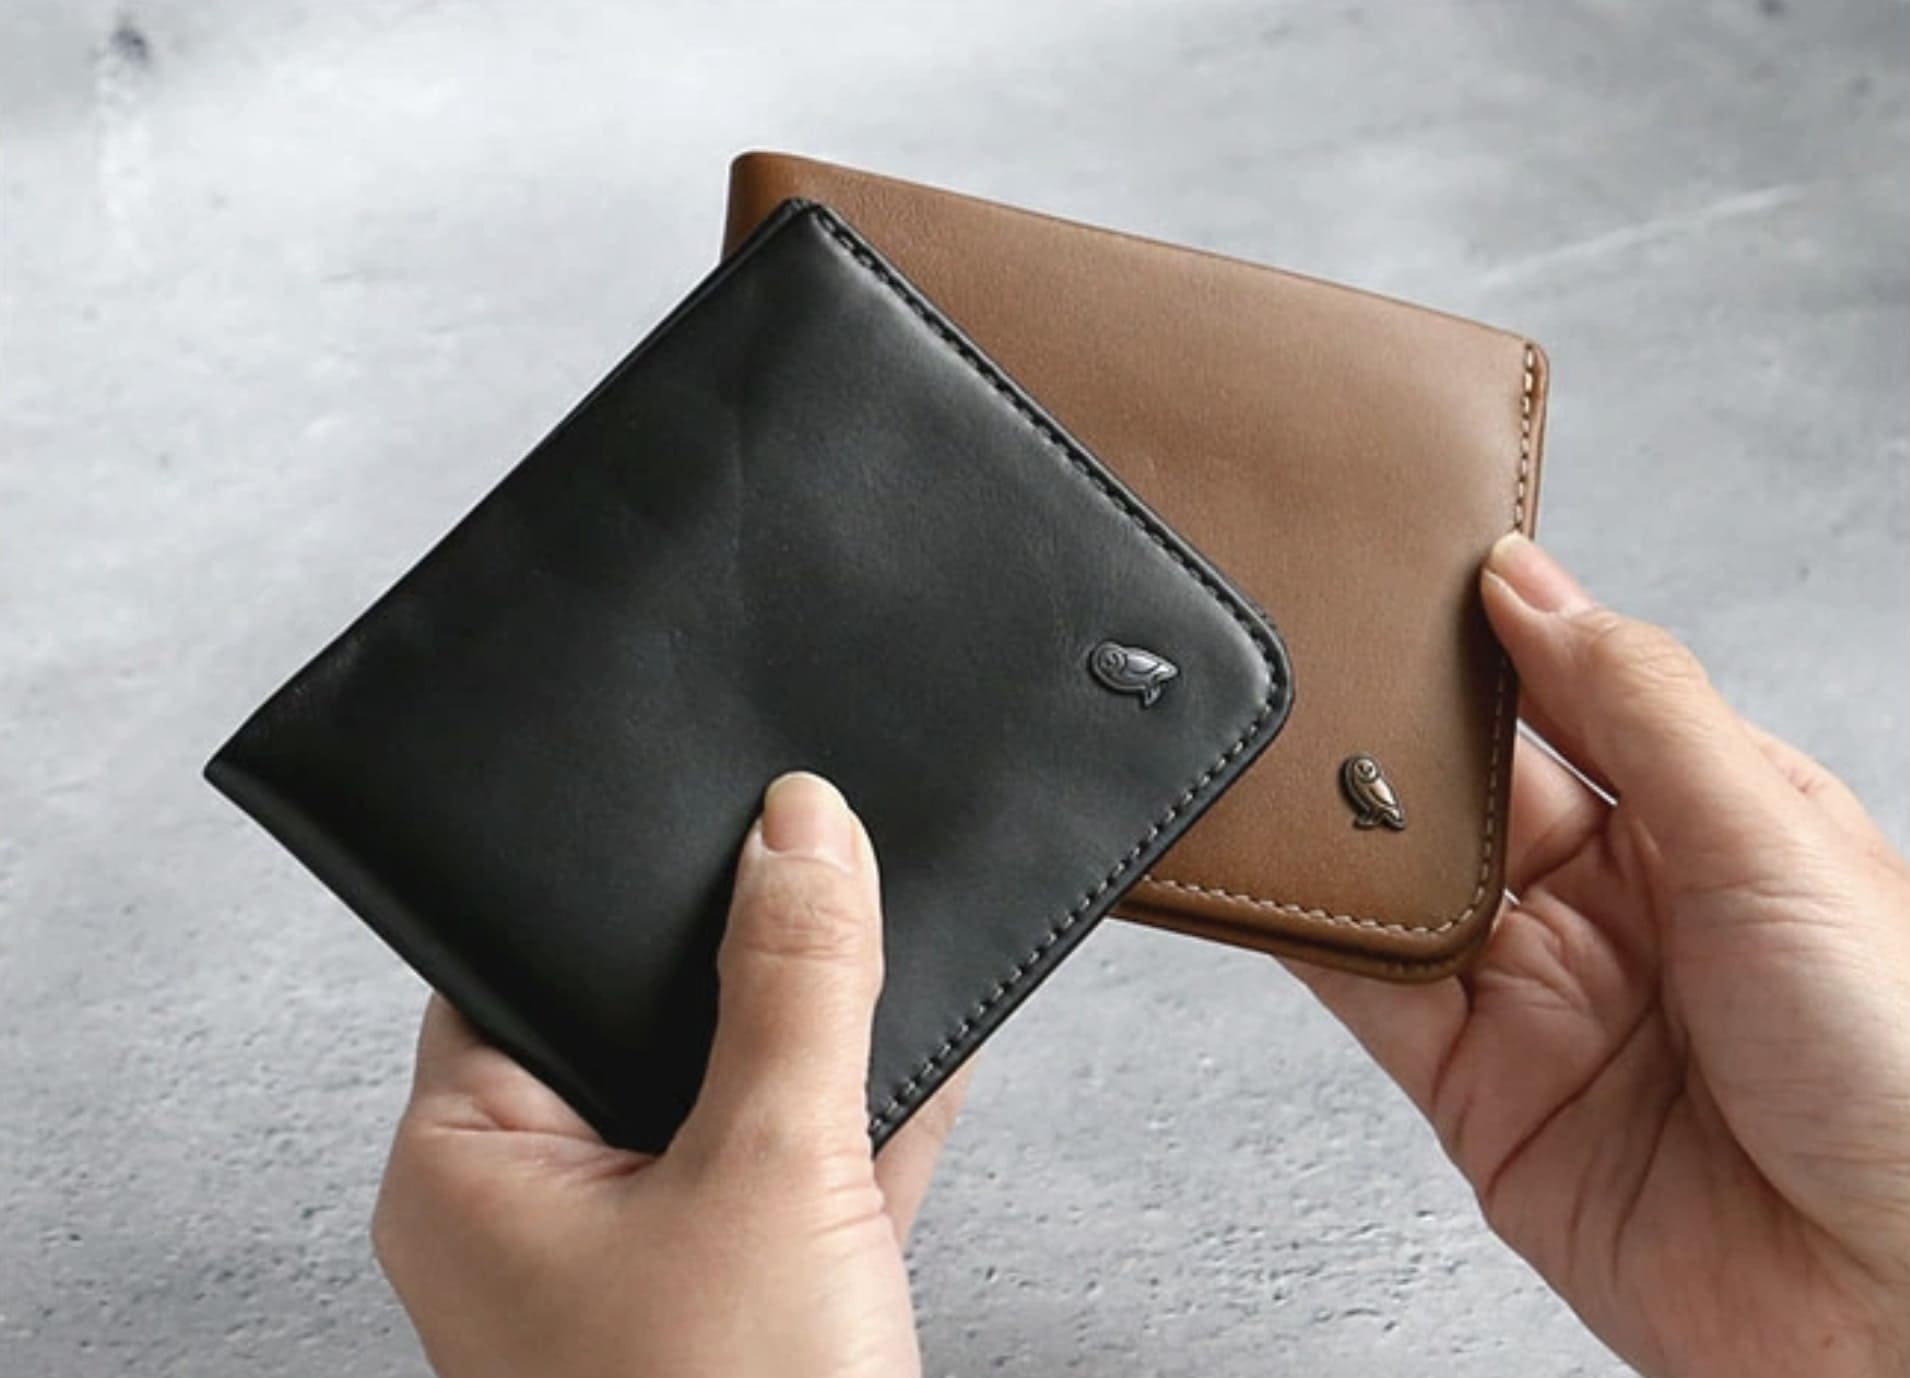 左手にベルロイの黒い二つ折り財布、右手にブラウンの二つ折り財布を持っている状態

